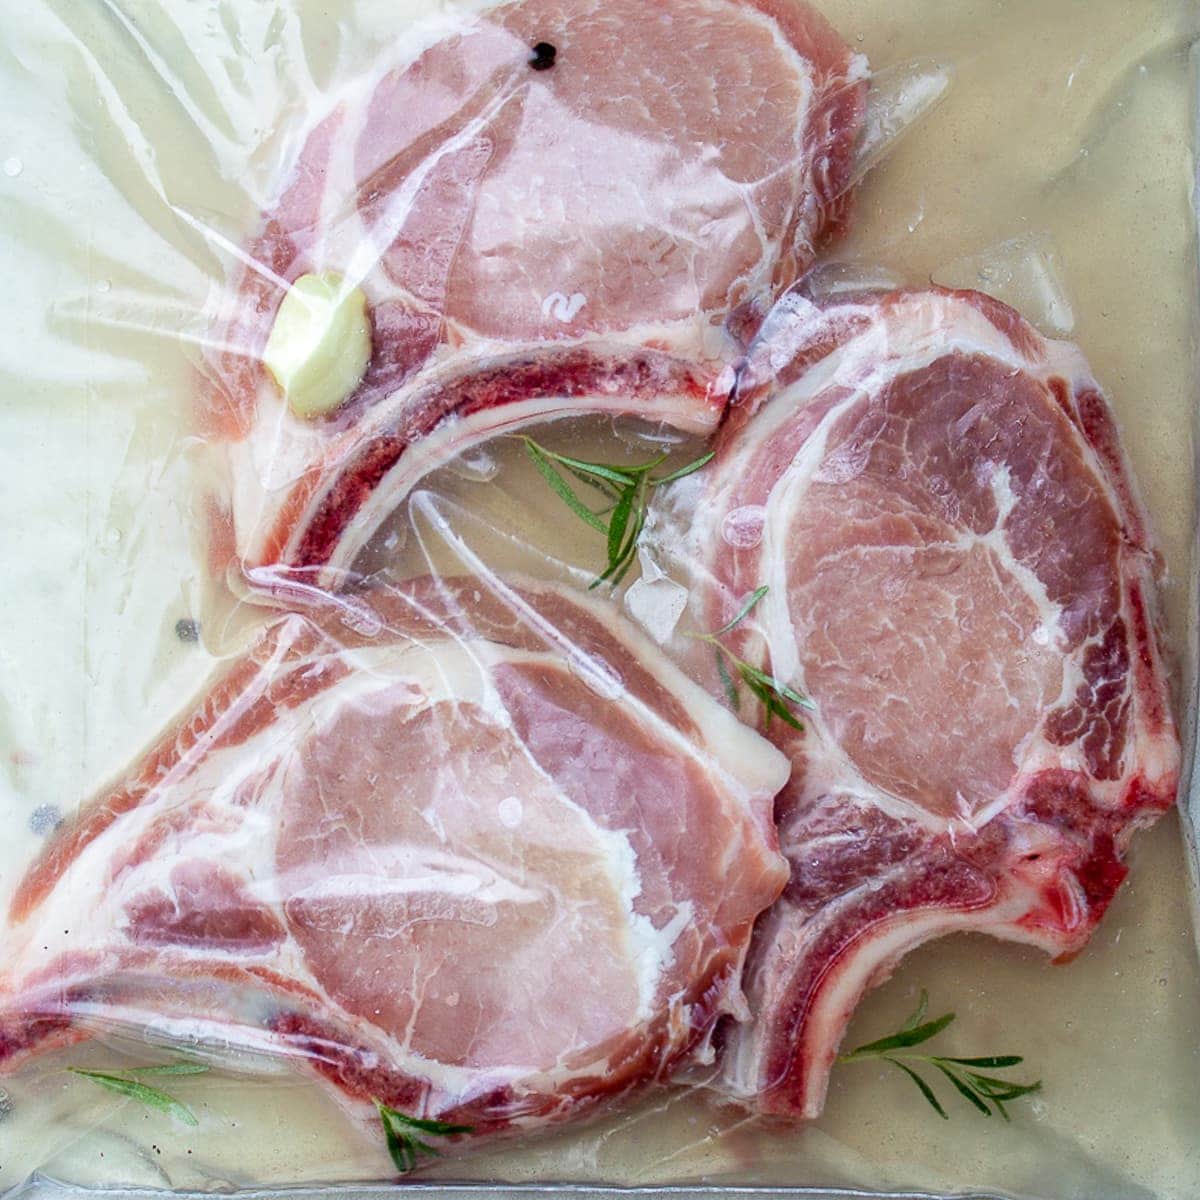 3 pork chops brining in bag